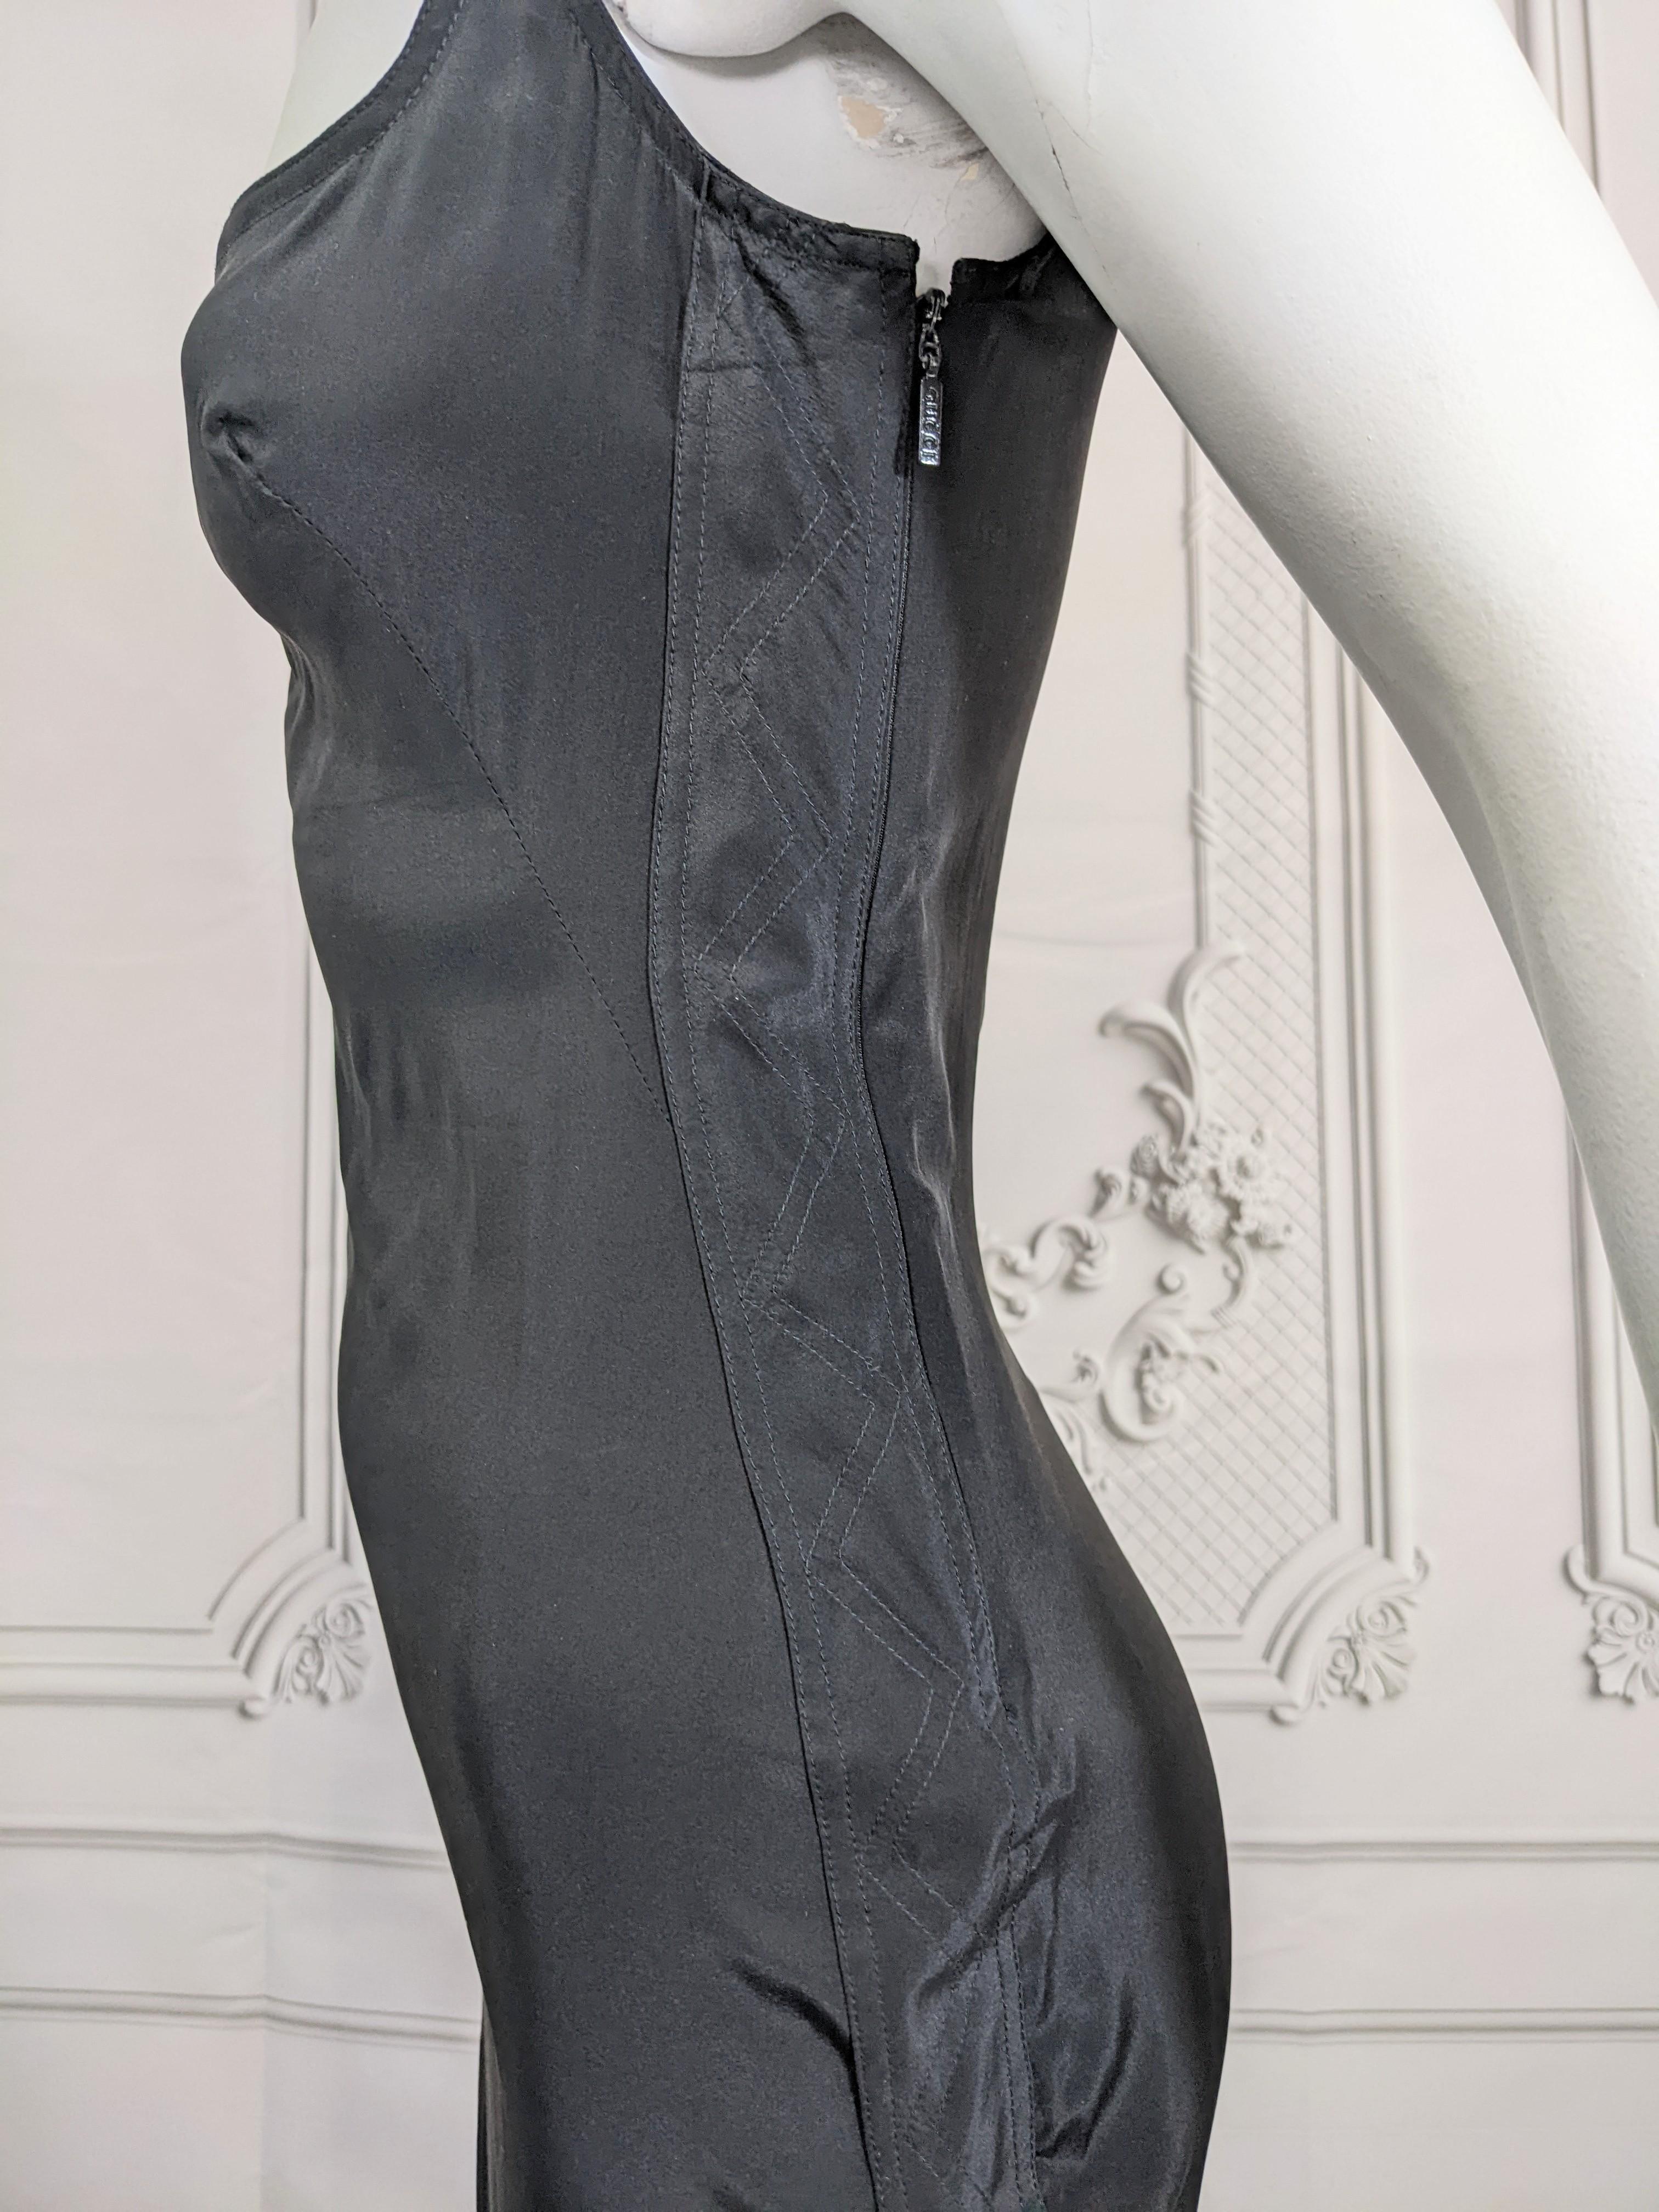 Gucci, Tom Ford Body Con Silk Slip Dress  For Sale 1